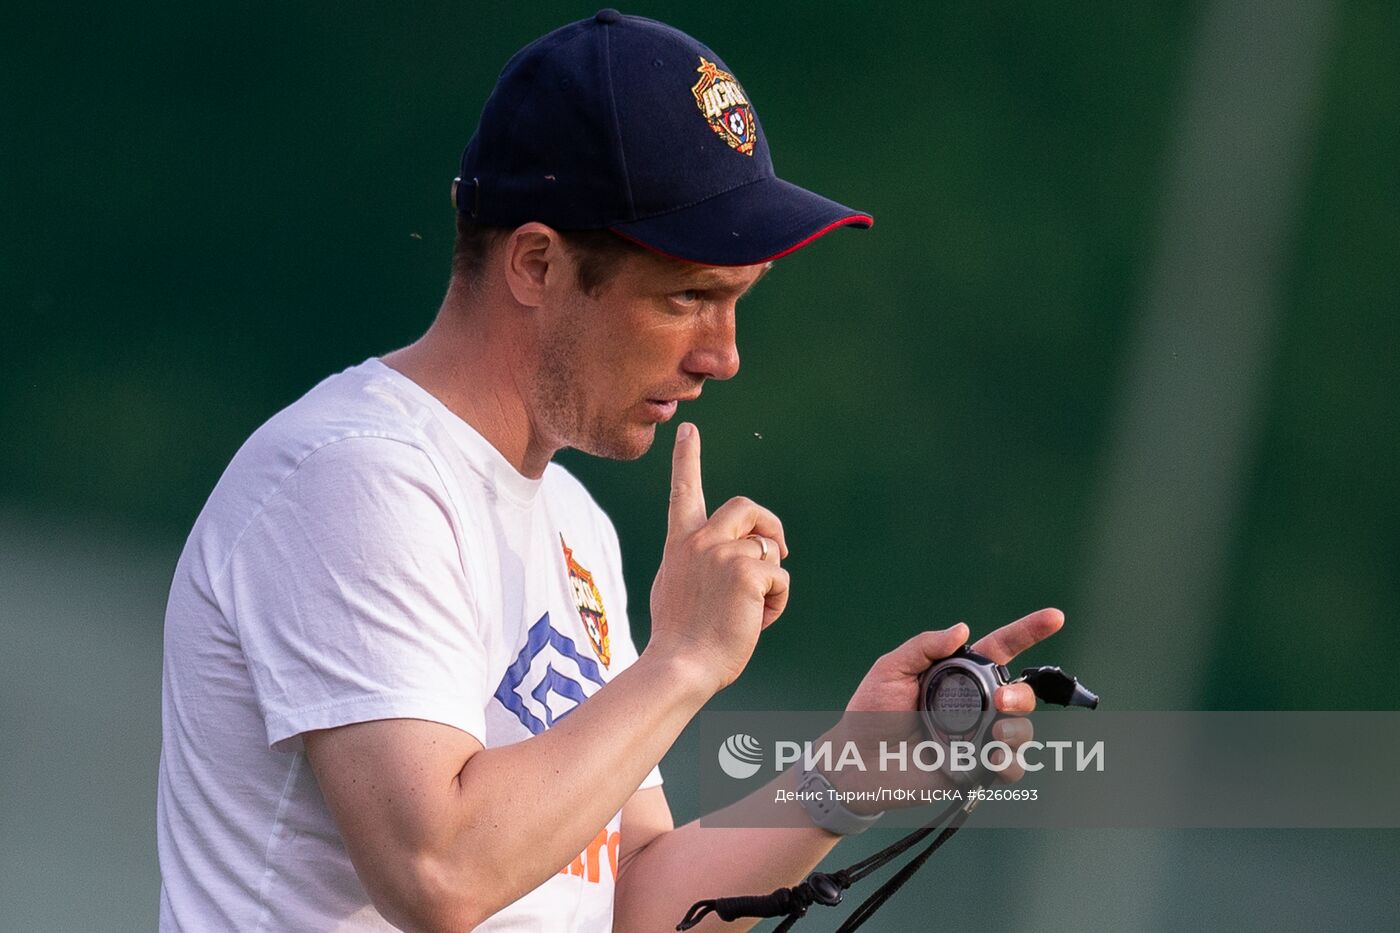 Подготовка ПФК ЦСКА к возобновлению сезона 